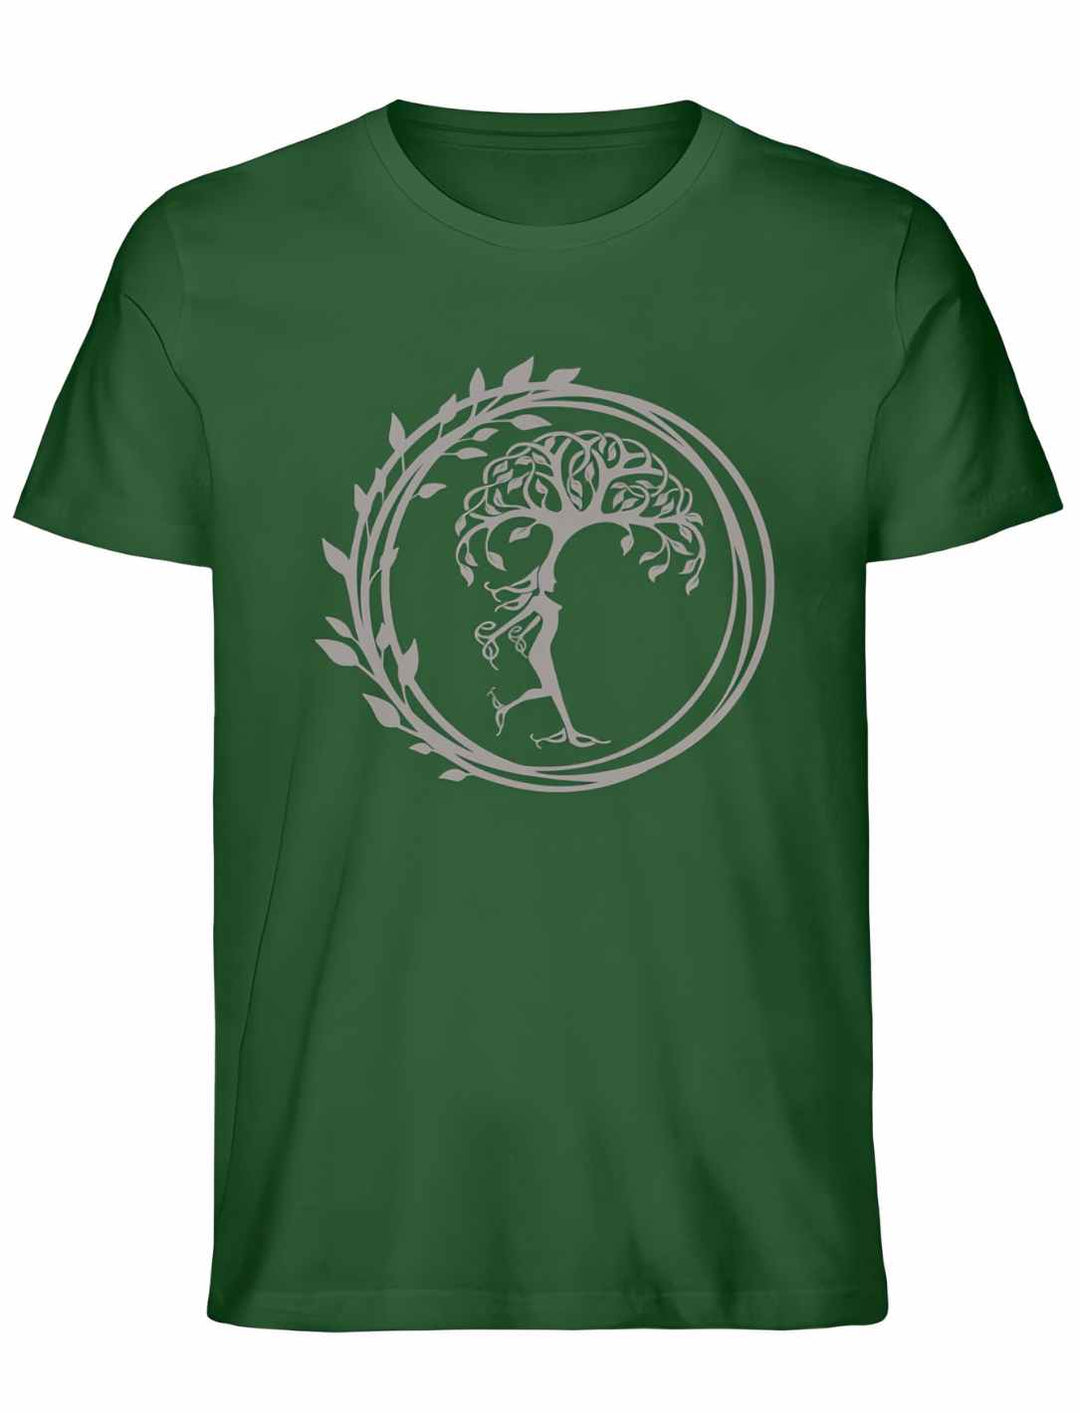 Bottle Green Unisex T-Shirt 'Silvaner Lebensbaum' von Runental.de, natürliche Darstellung in Liegeansicht